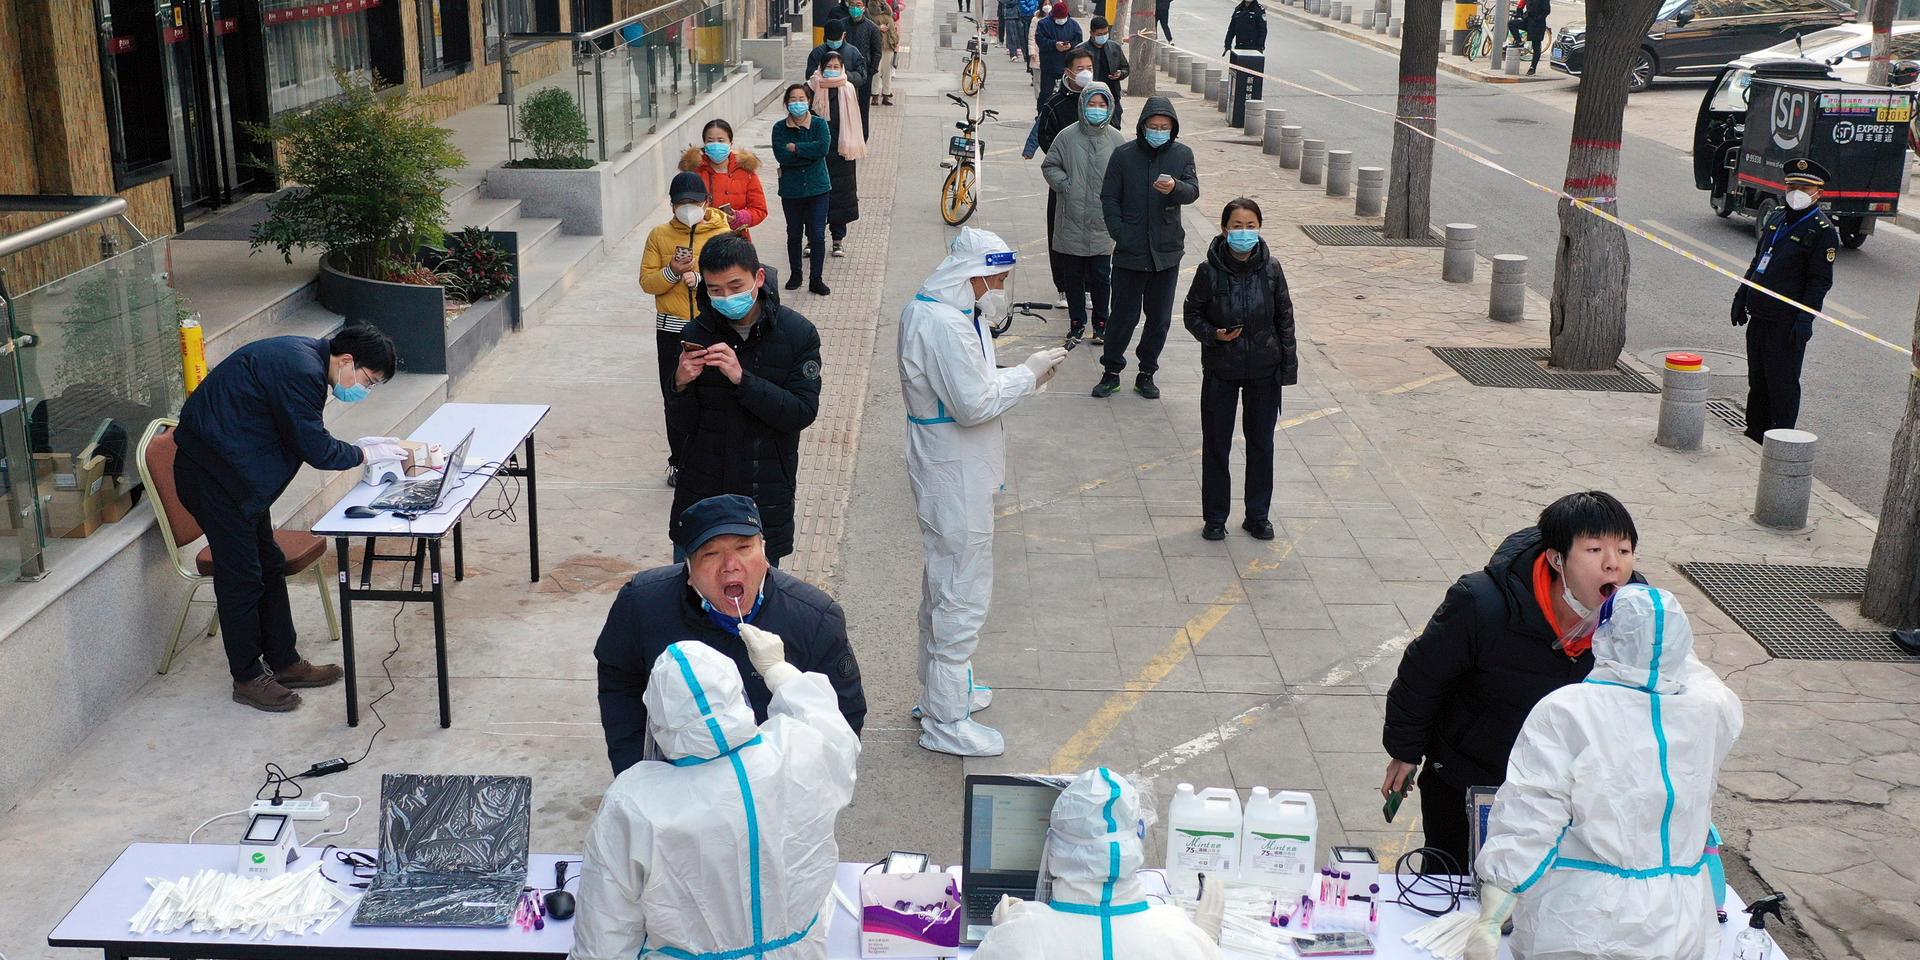 Masstestning av covid-19 i staden Xian. Nu har coronaviruset upptäckts även i en miljonstad i södra Kina.